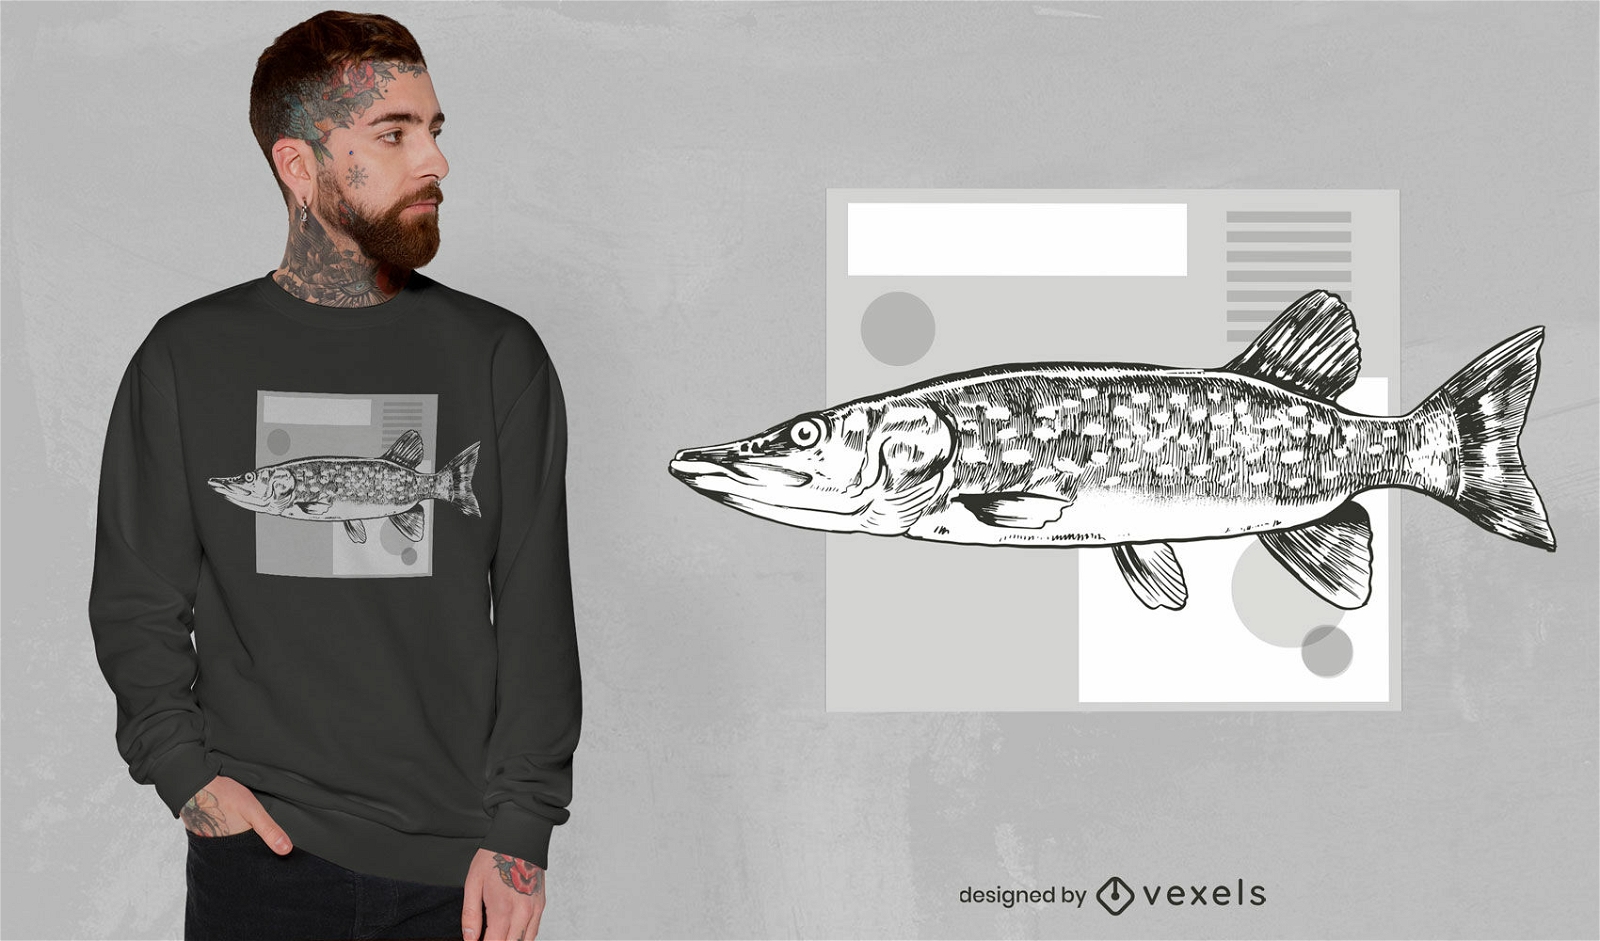 Dise?o de camiseta realista de peces marinos.